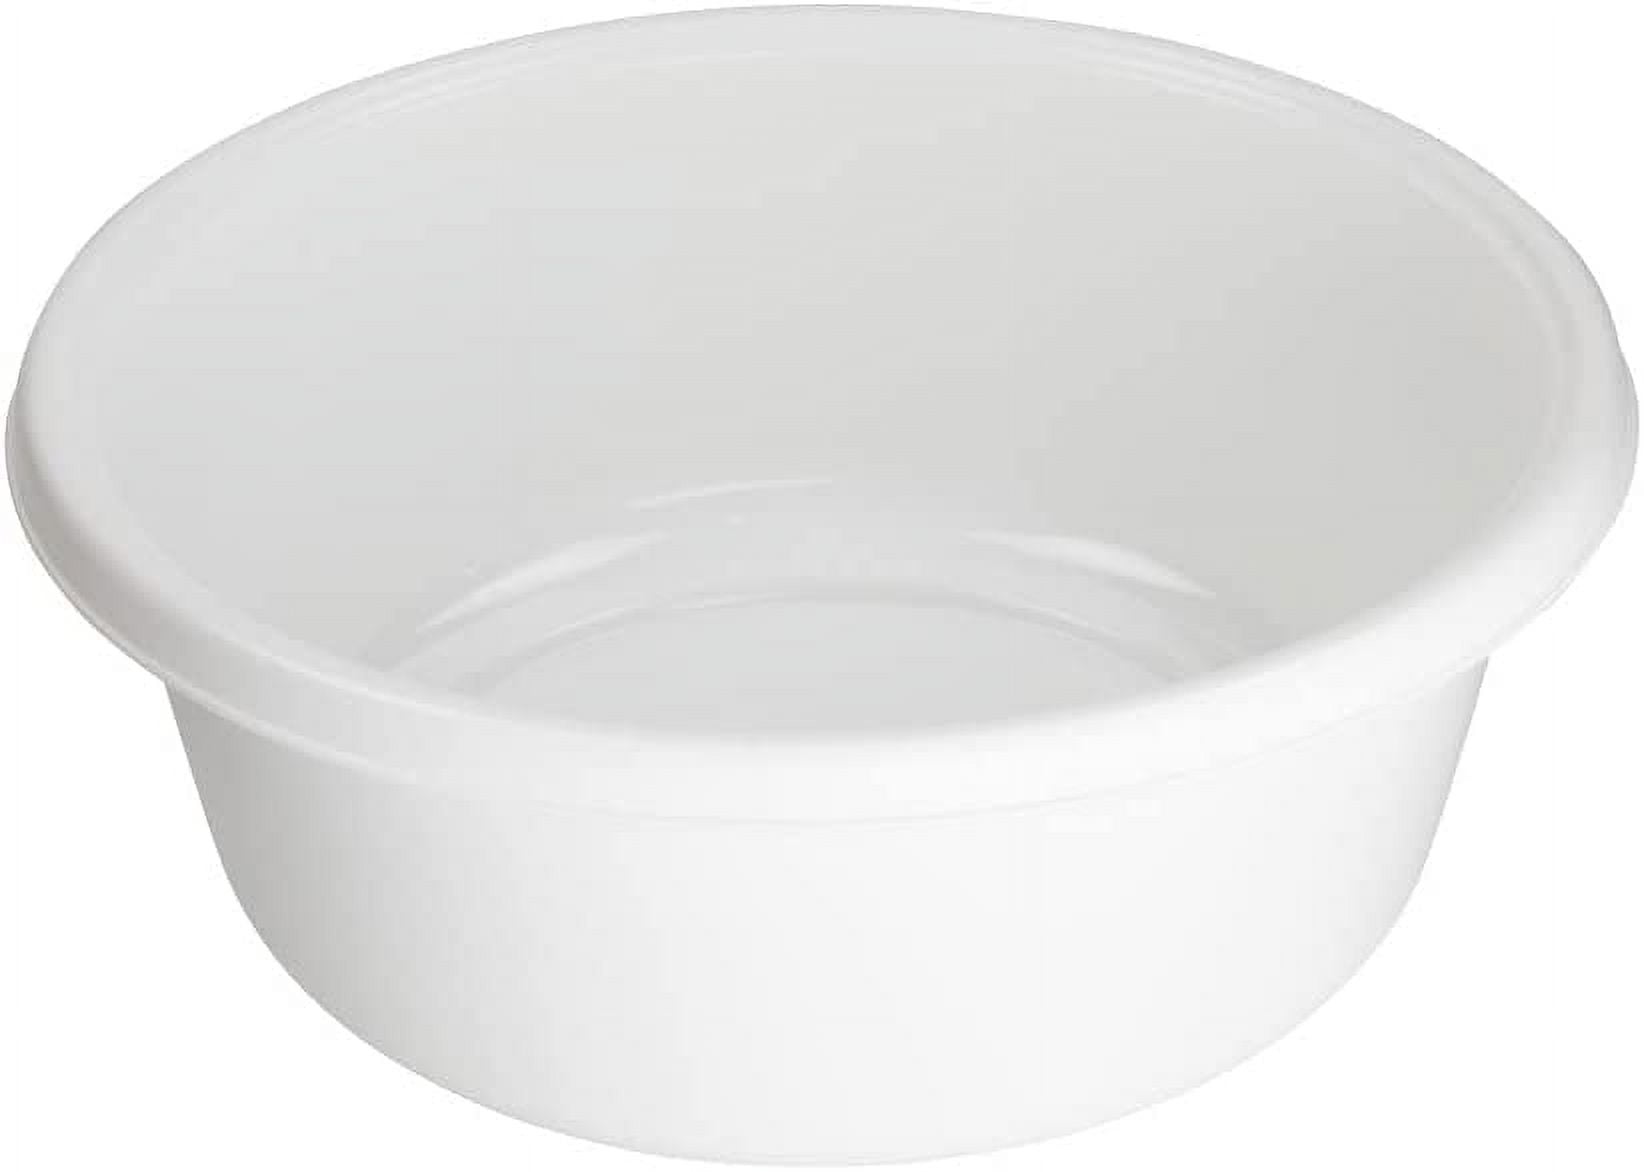 Yuright 8 Quart Plastic Wash Basin, Small Dish Pan, 3 Pack